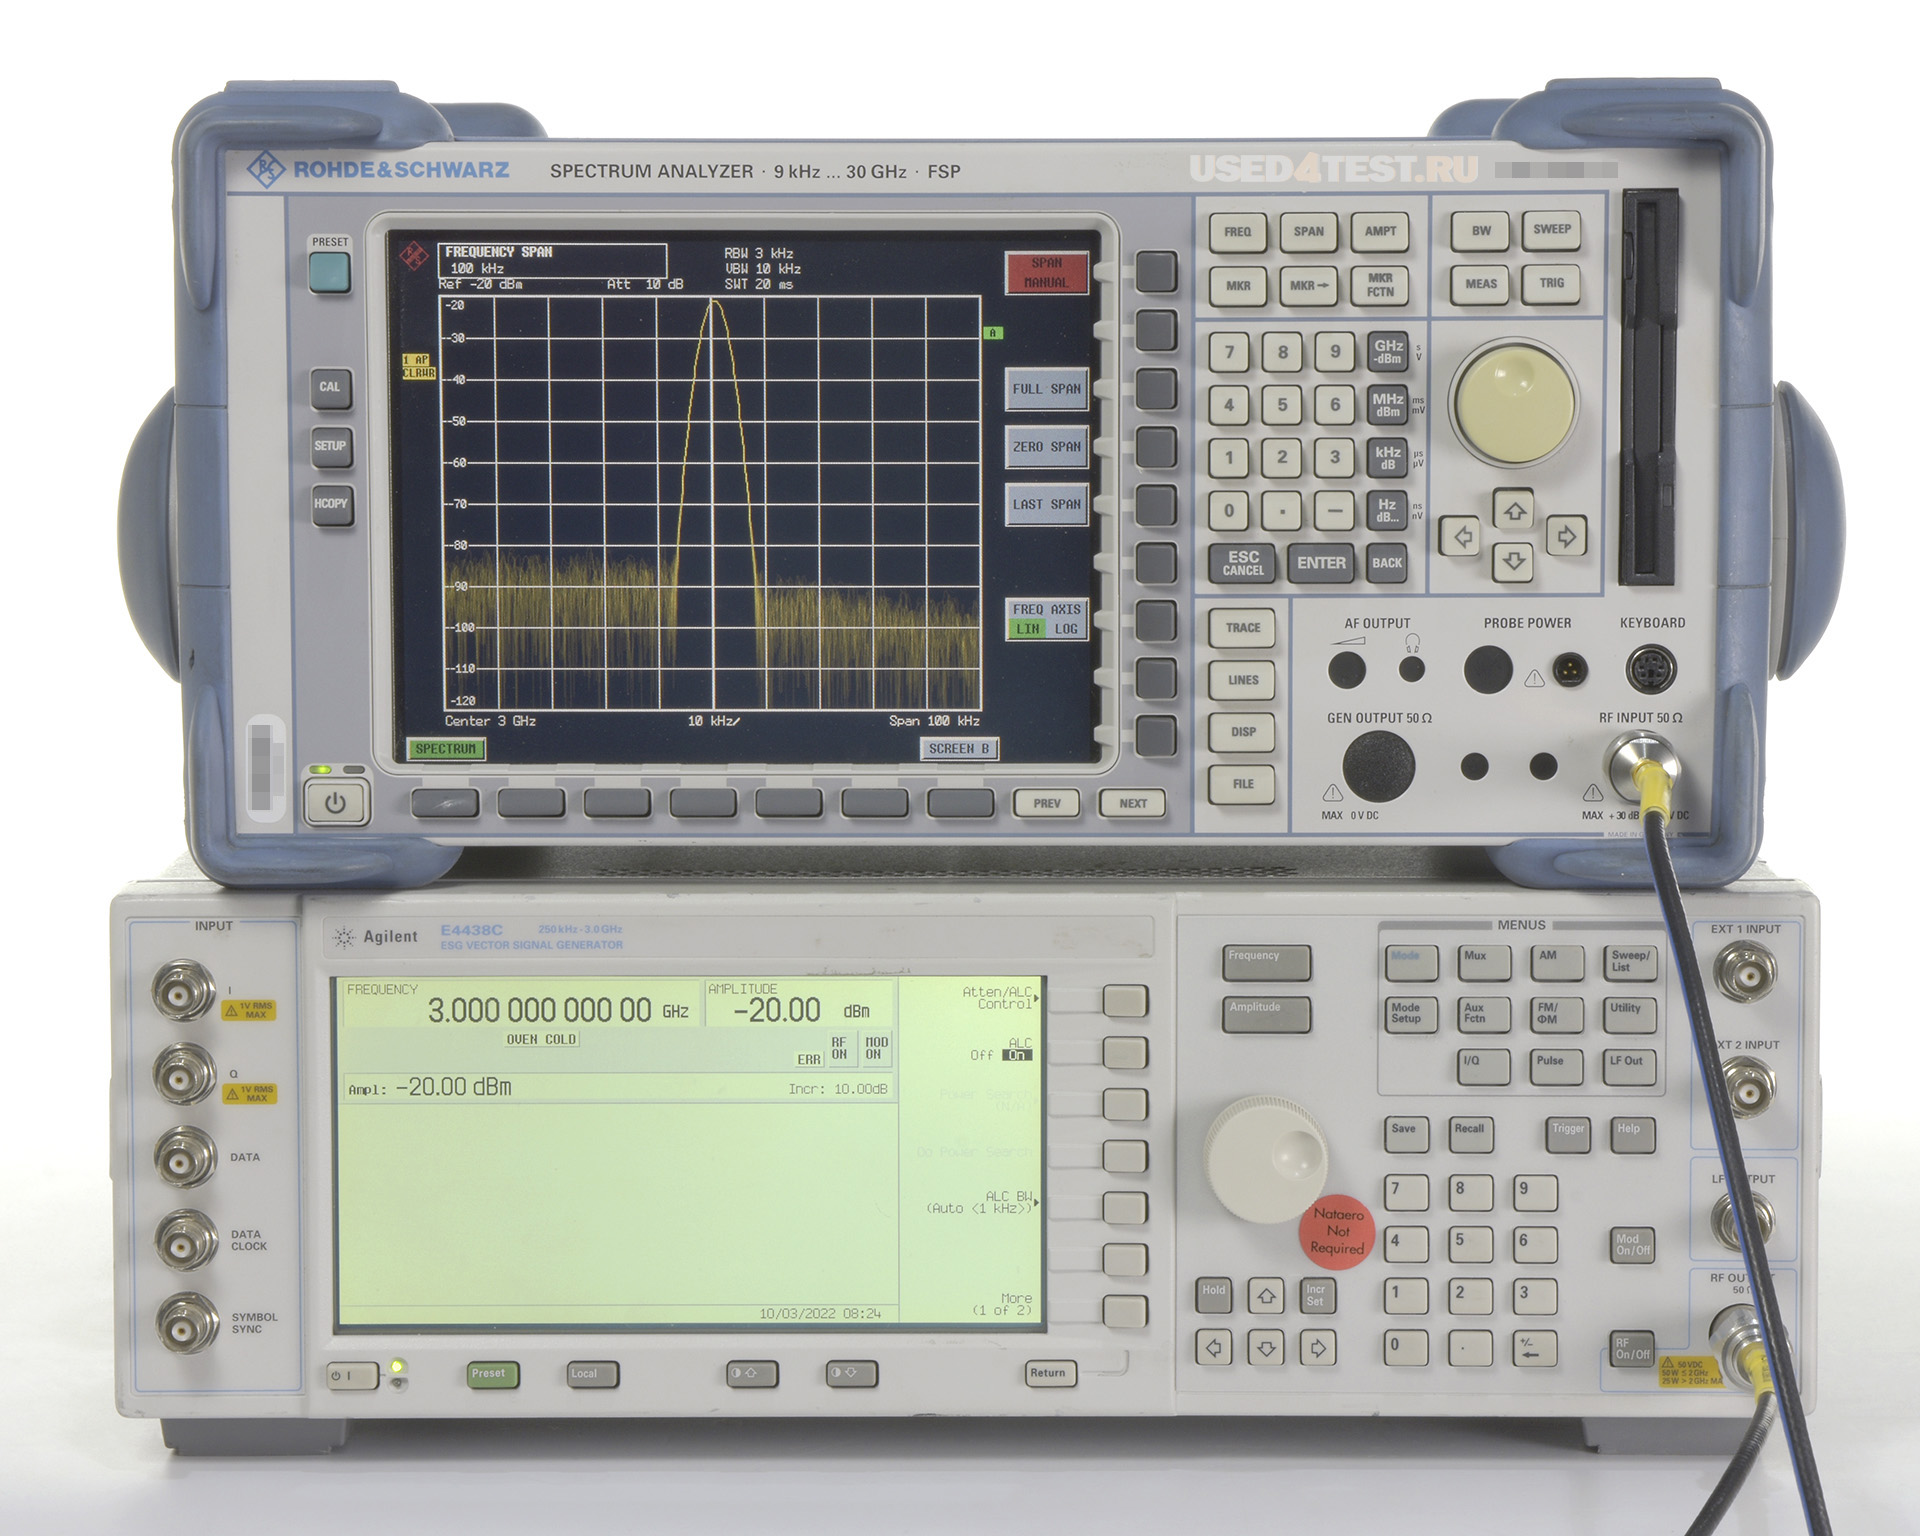 Анализатор спектра Rohde&Schwarz FSP30
 с диапазоном частот от 9 кГц до 30 ГГц
 
 
 


 Стоимость указана в Рублях DDP Москва по безналичному расчету включая НДС 20%

 